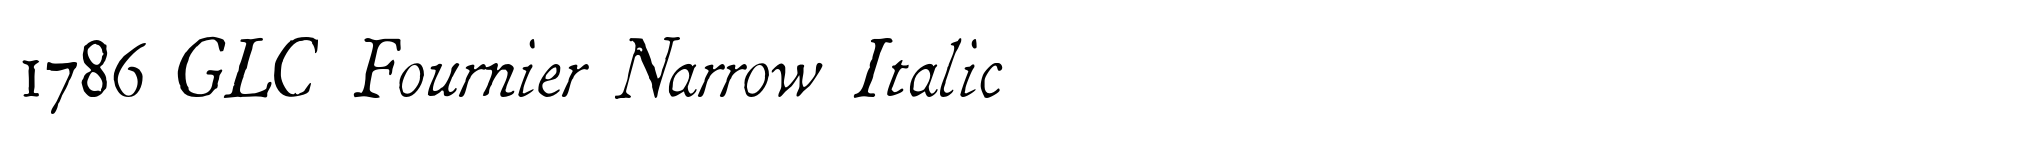 1786 GLC Fournier Narrow Italic image